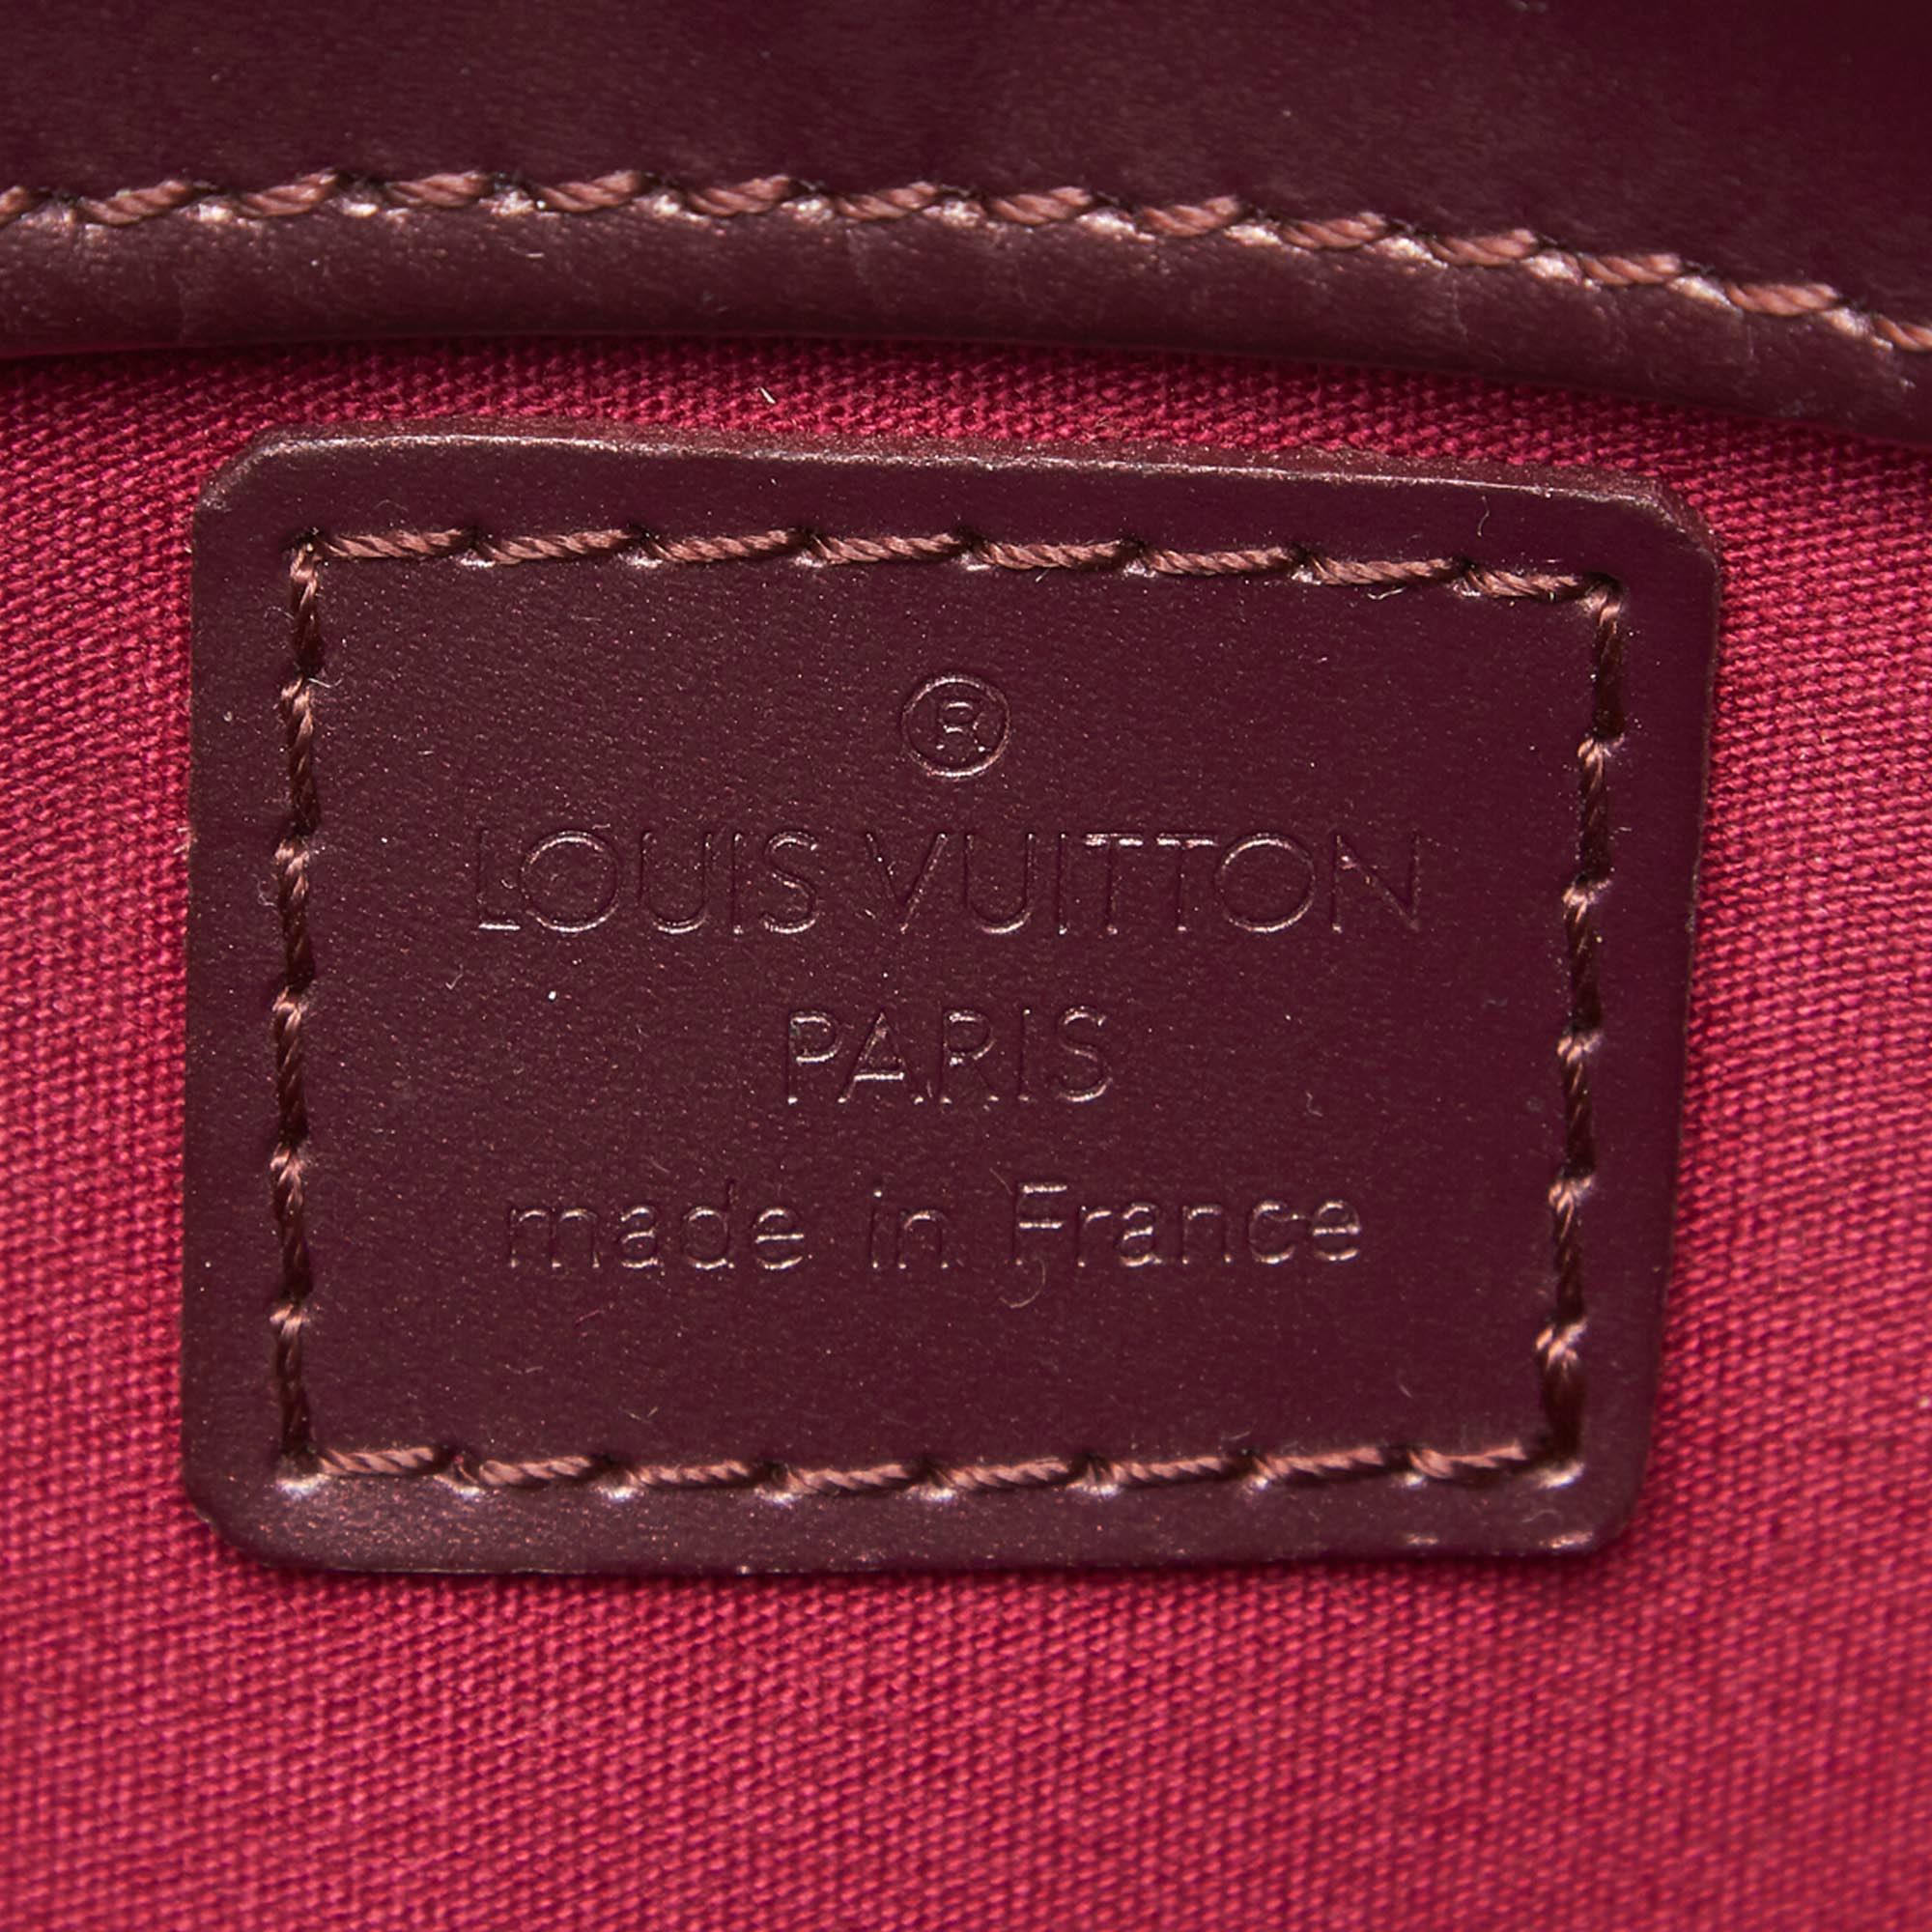 Vintage Authentic Louis Vuitton Purple Monogram Mat Fowler France SMALL  For Sale 1